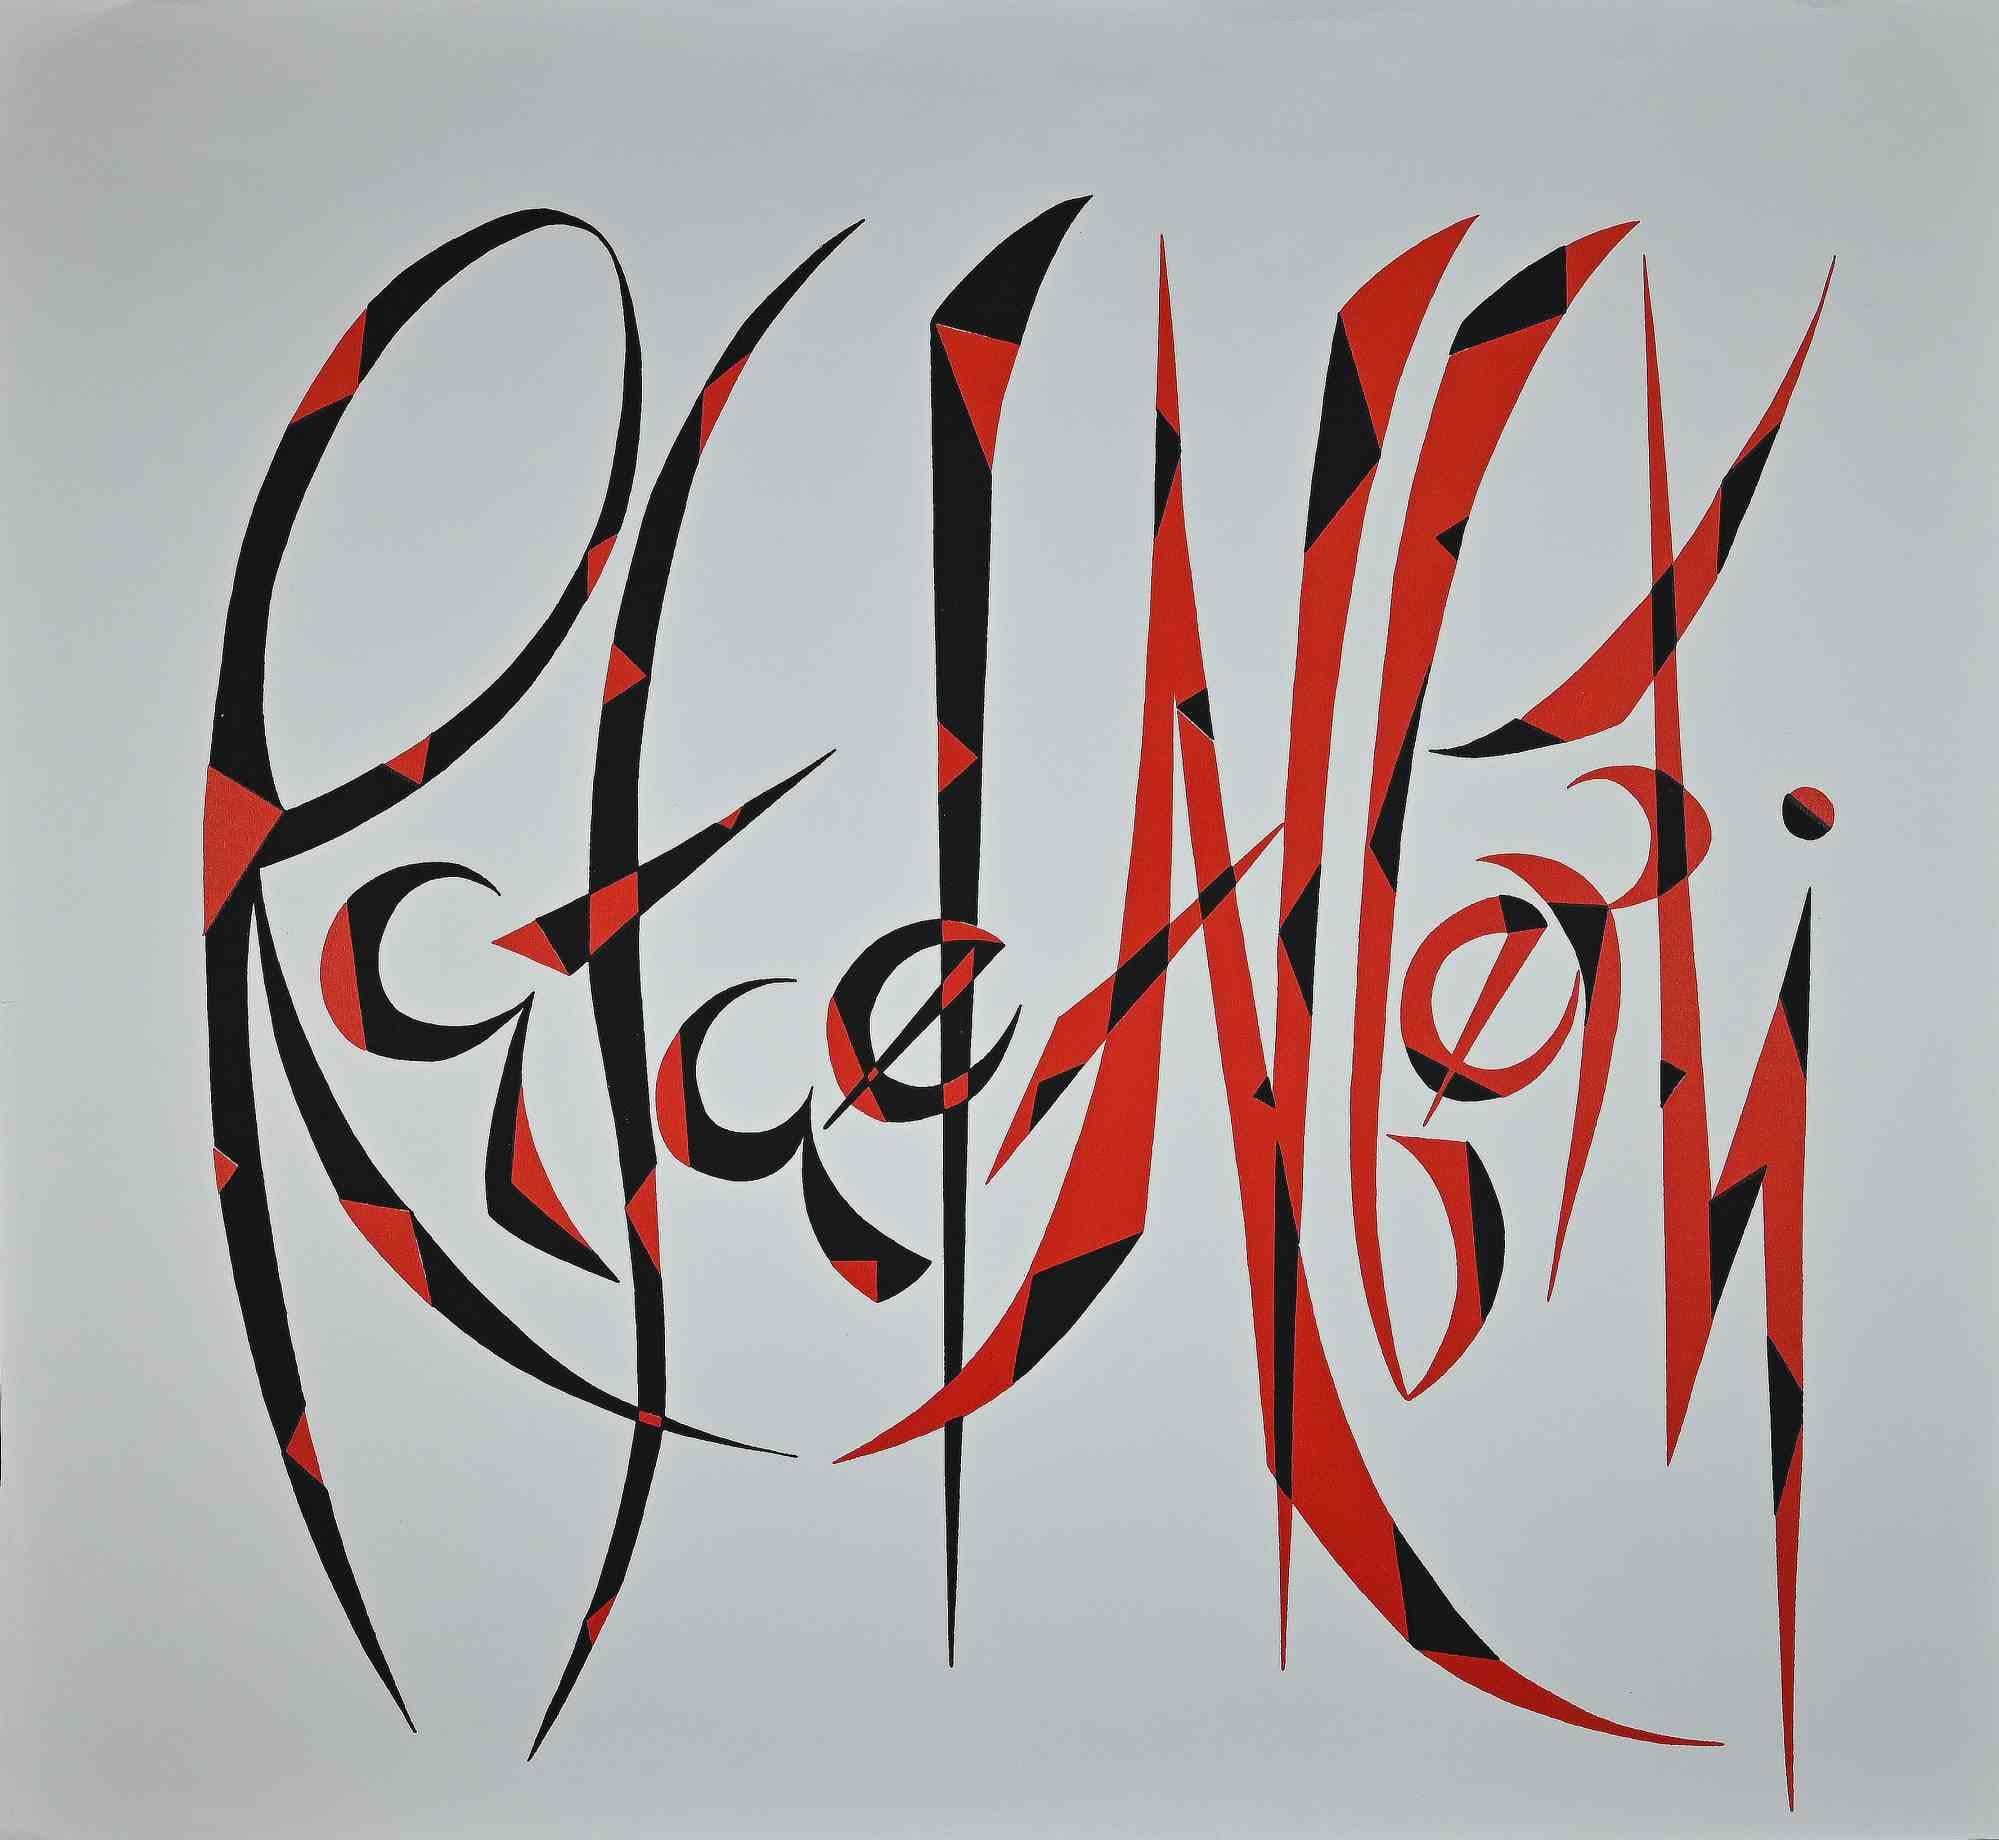 Rafael Alberti Abstract Print - Creative Sign  - Original Serigraph by Raphael Alberti - 1973